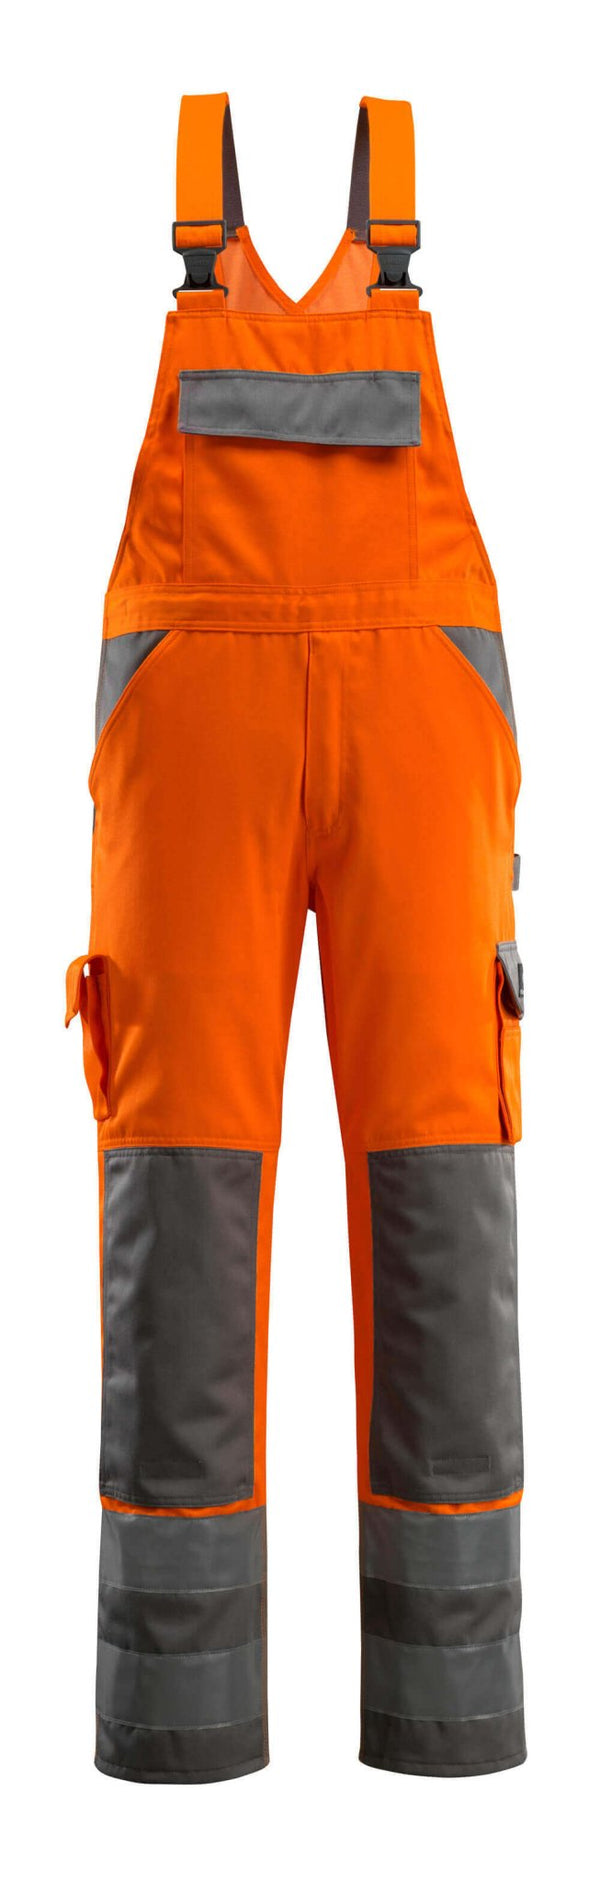 Avohaalari polvitaskuilla - 07169-860 - hi-vis oranssi/antrasiitti - Safewear